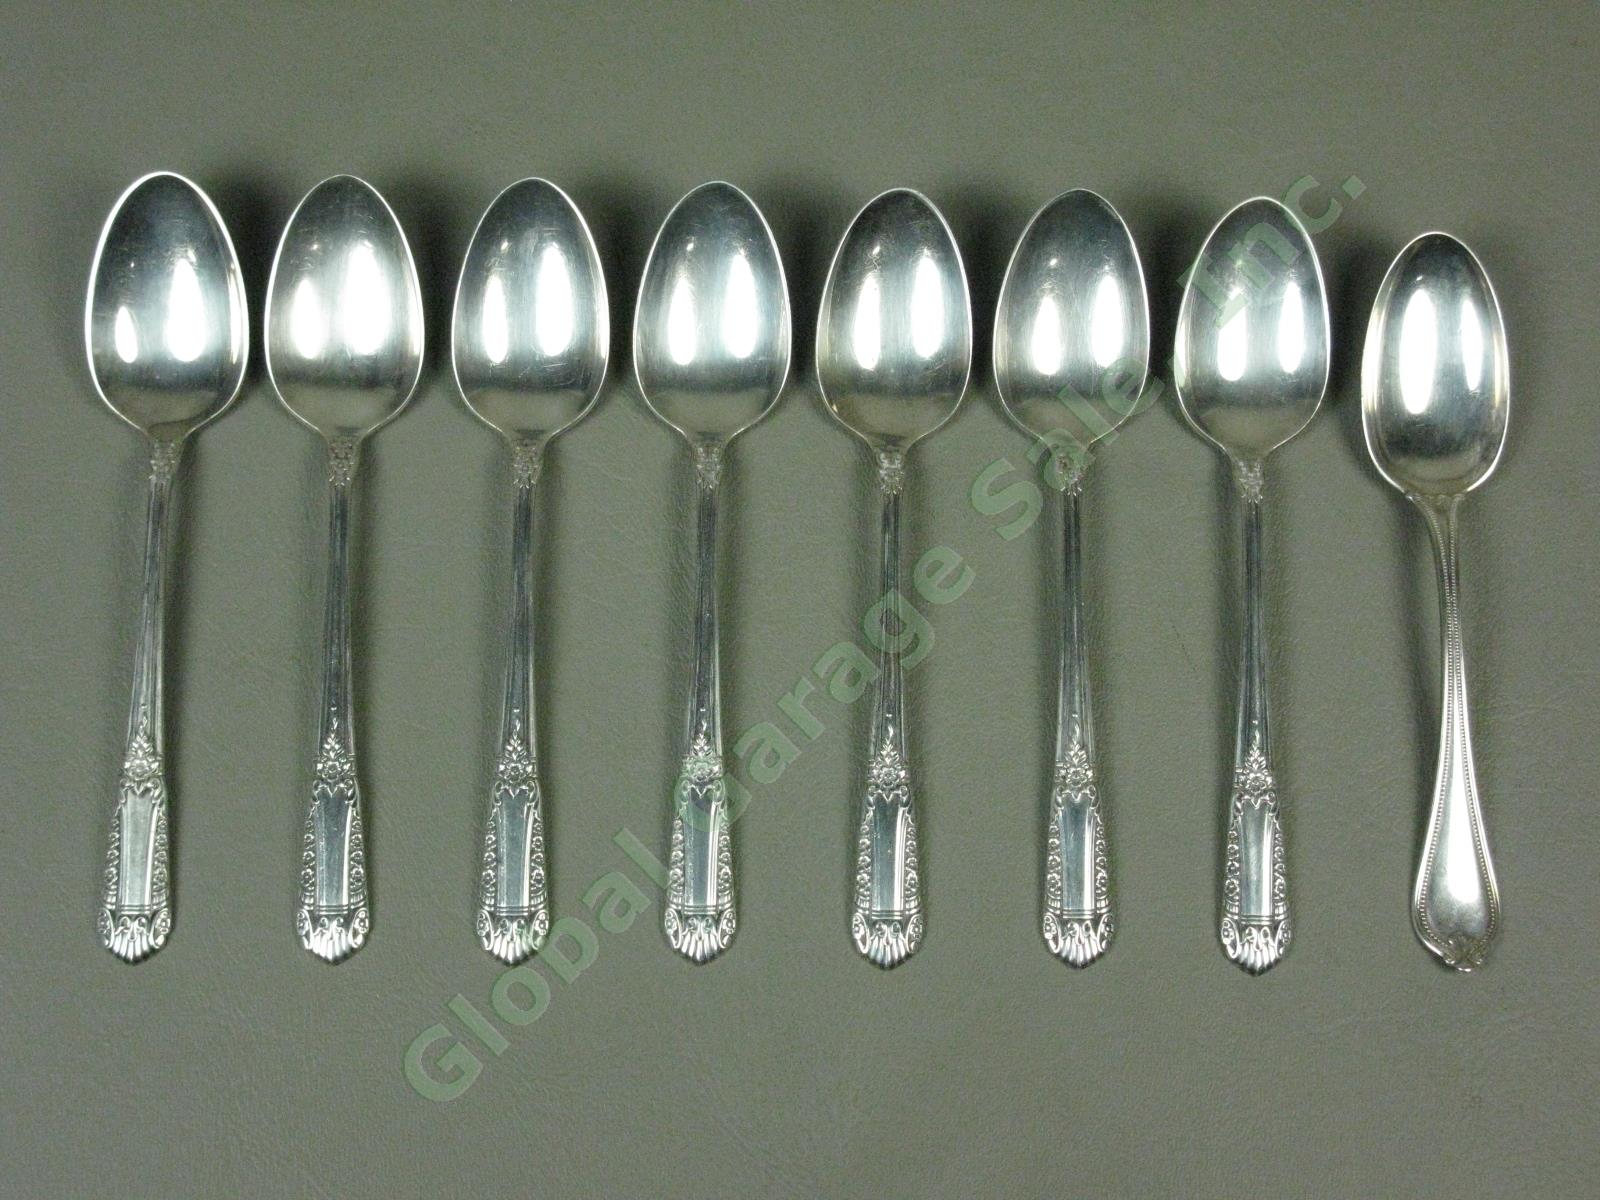 7 State House Inaugural Sterling Silver Teaspoons Spoons Silverware Set 232 Gram